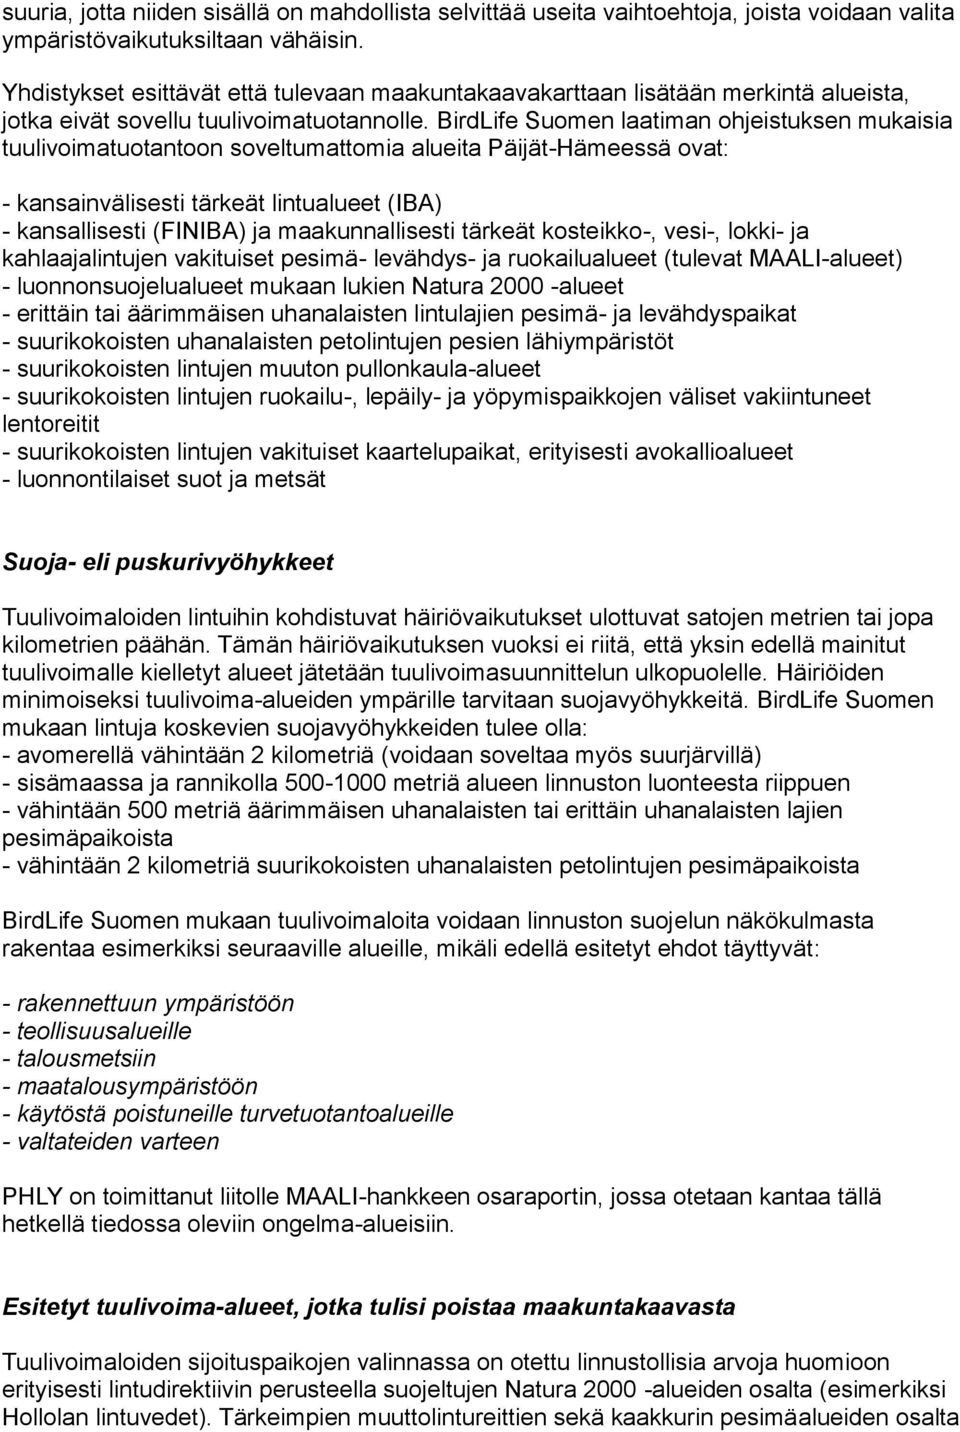 BirdLife Suomen laatiman ohjeistuksen mukaisia tuulivoimatuotantoon soveltumattomia alueita Päijät-Hämeessä ovat: - kansainvälisesti tärkeät lintualueet (IBA) - kansallisesti (FINIBA) ja